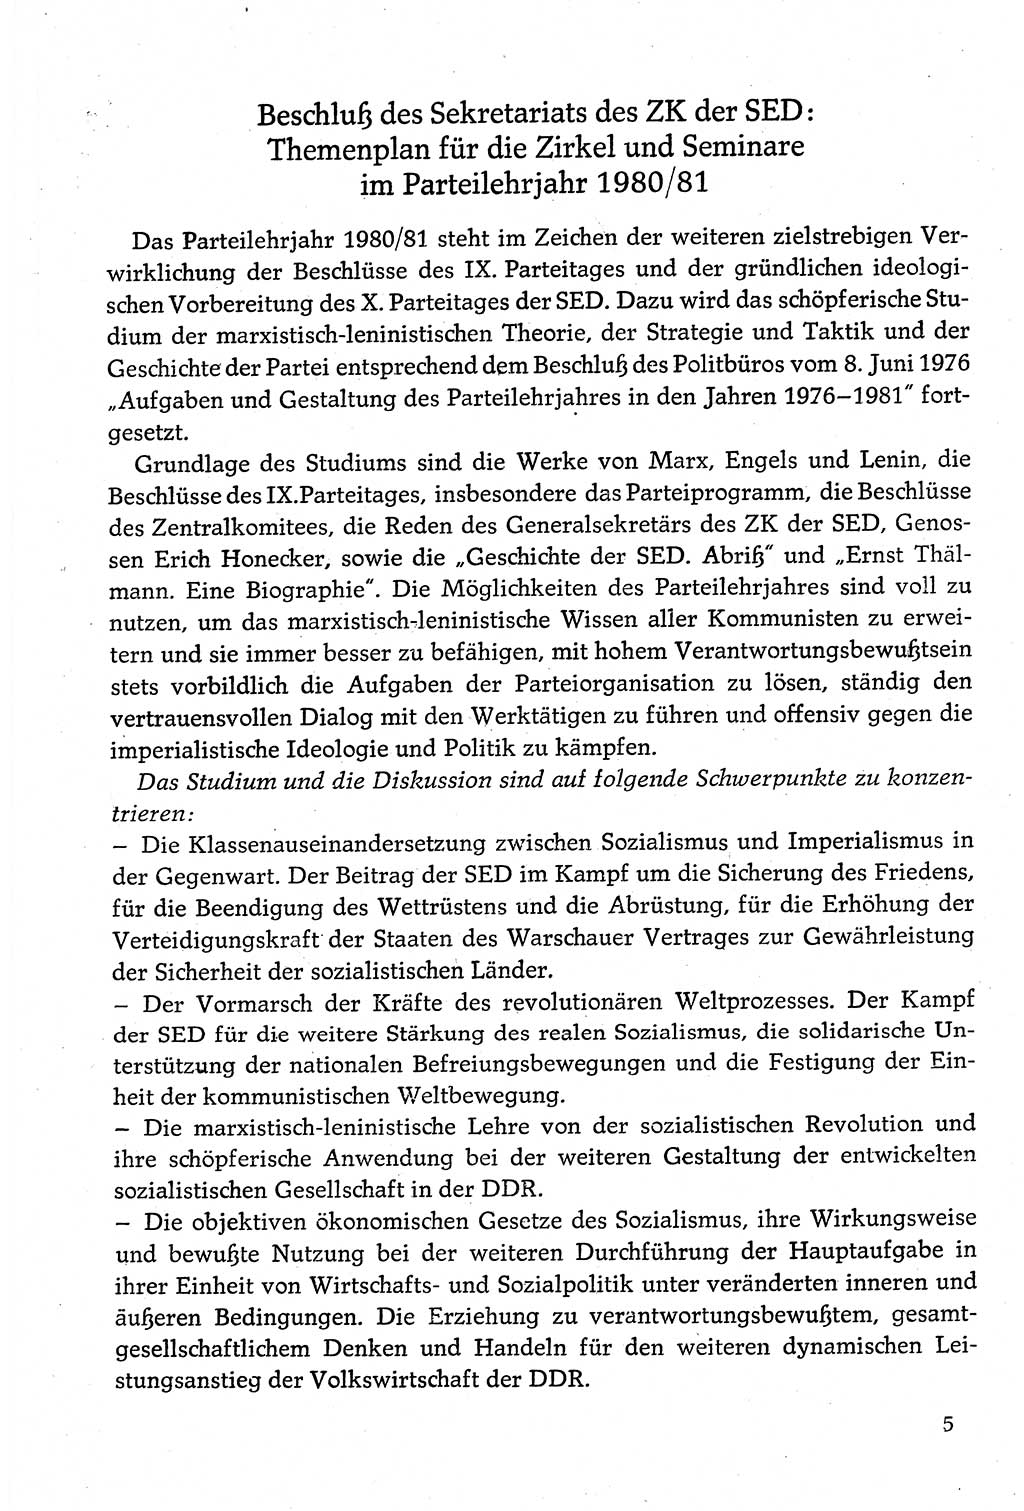 Dokumente der Sozialistischen Einheitspartei Deutschlands (SED) [Deutsche Demokratische Republik (DDR)] 1980-1981, Seite 5 (Dok. SED DDR 1980-1981, S. 5)